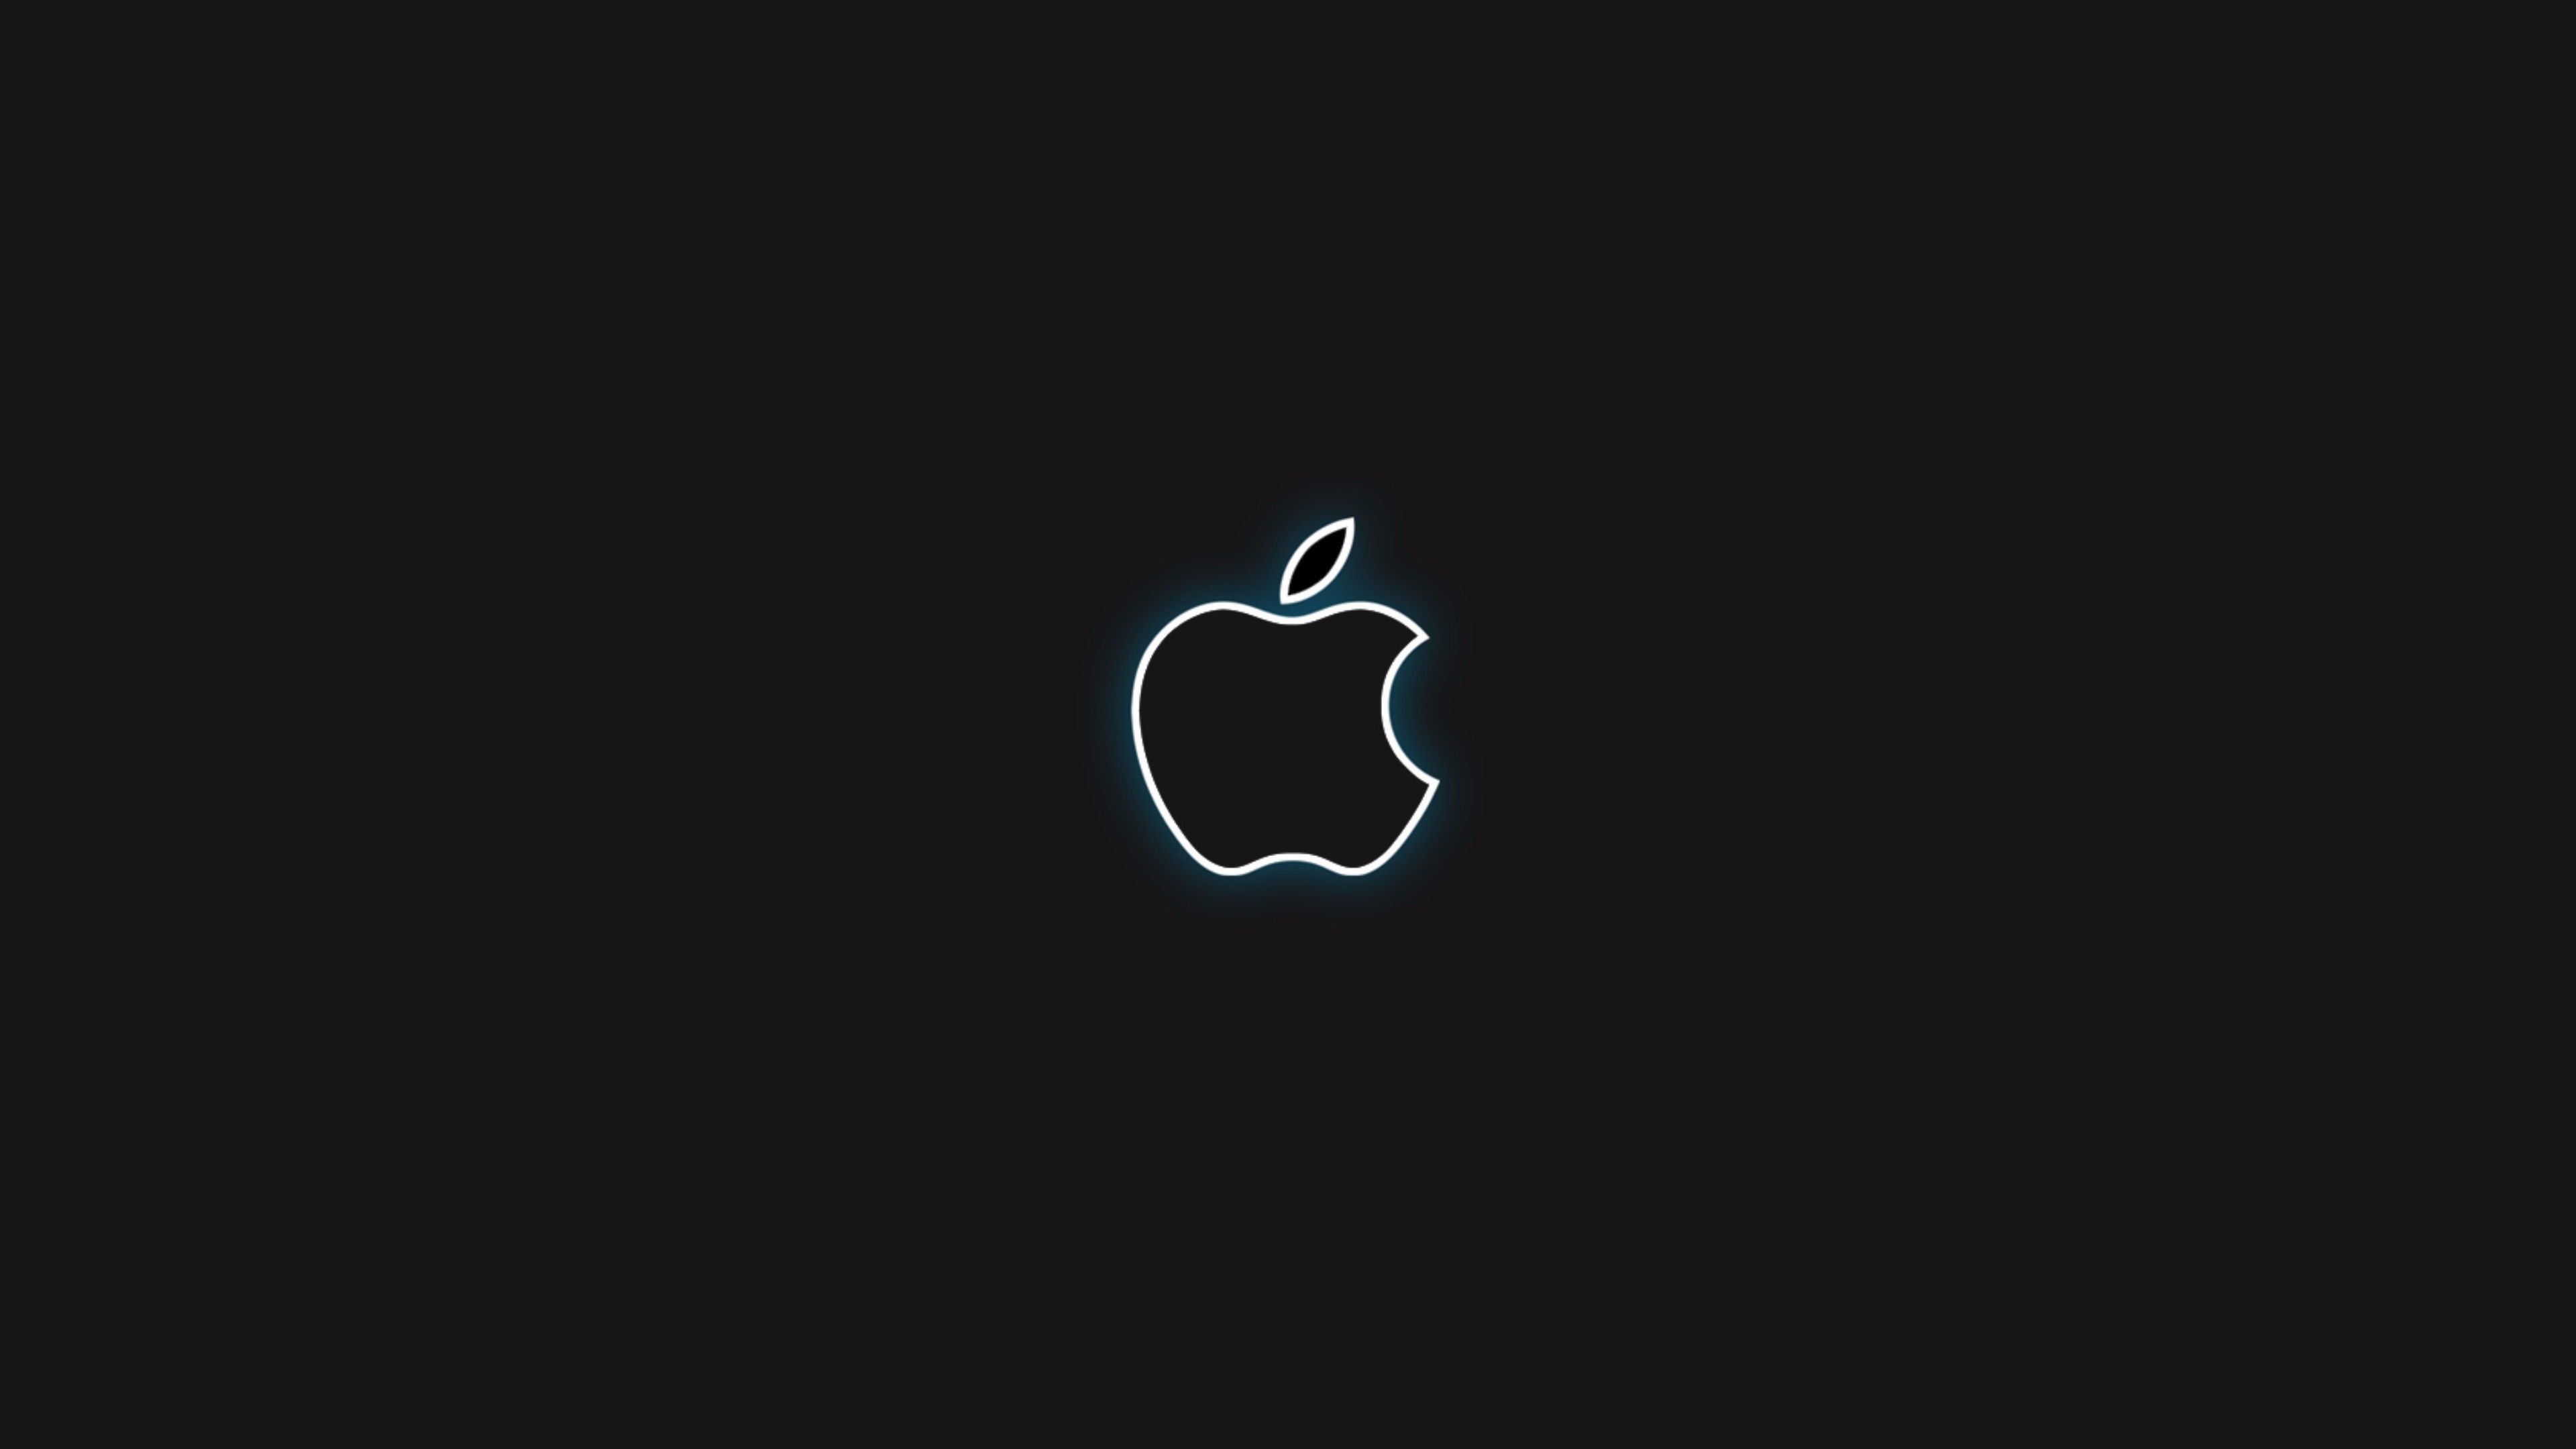 Black Wallpaper 4k. Black apple logo, Black apple wallpaper, Apple logo wallpaper